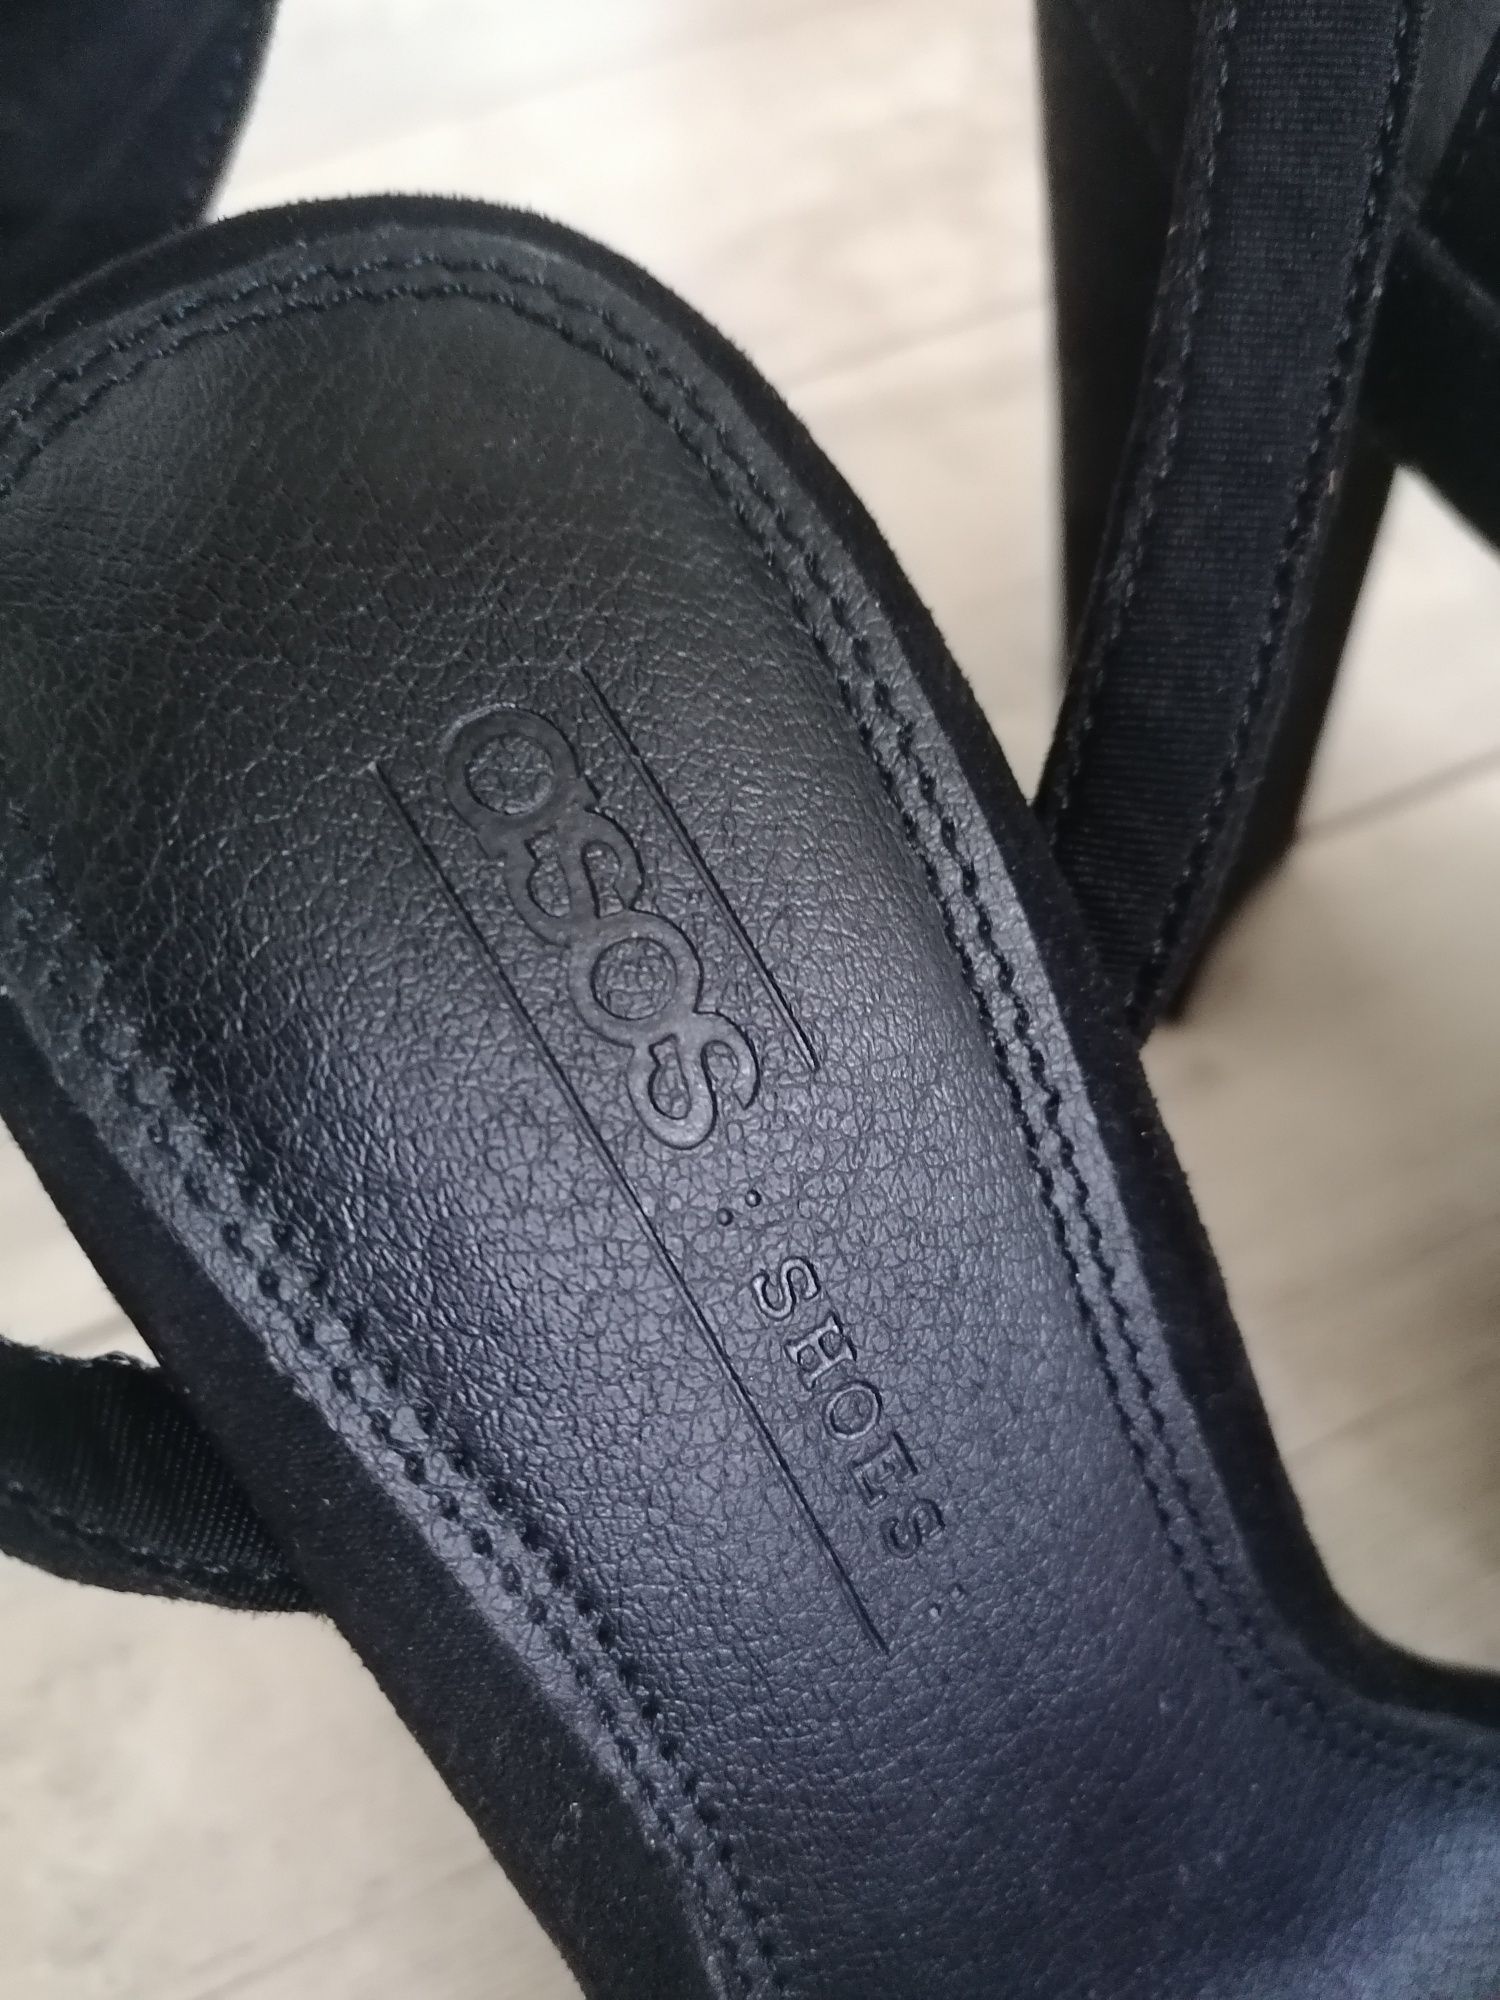 Buty damskie Asos, sandały czarne zamszowe rozmiar 5 (38), nowe